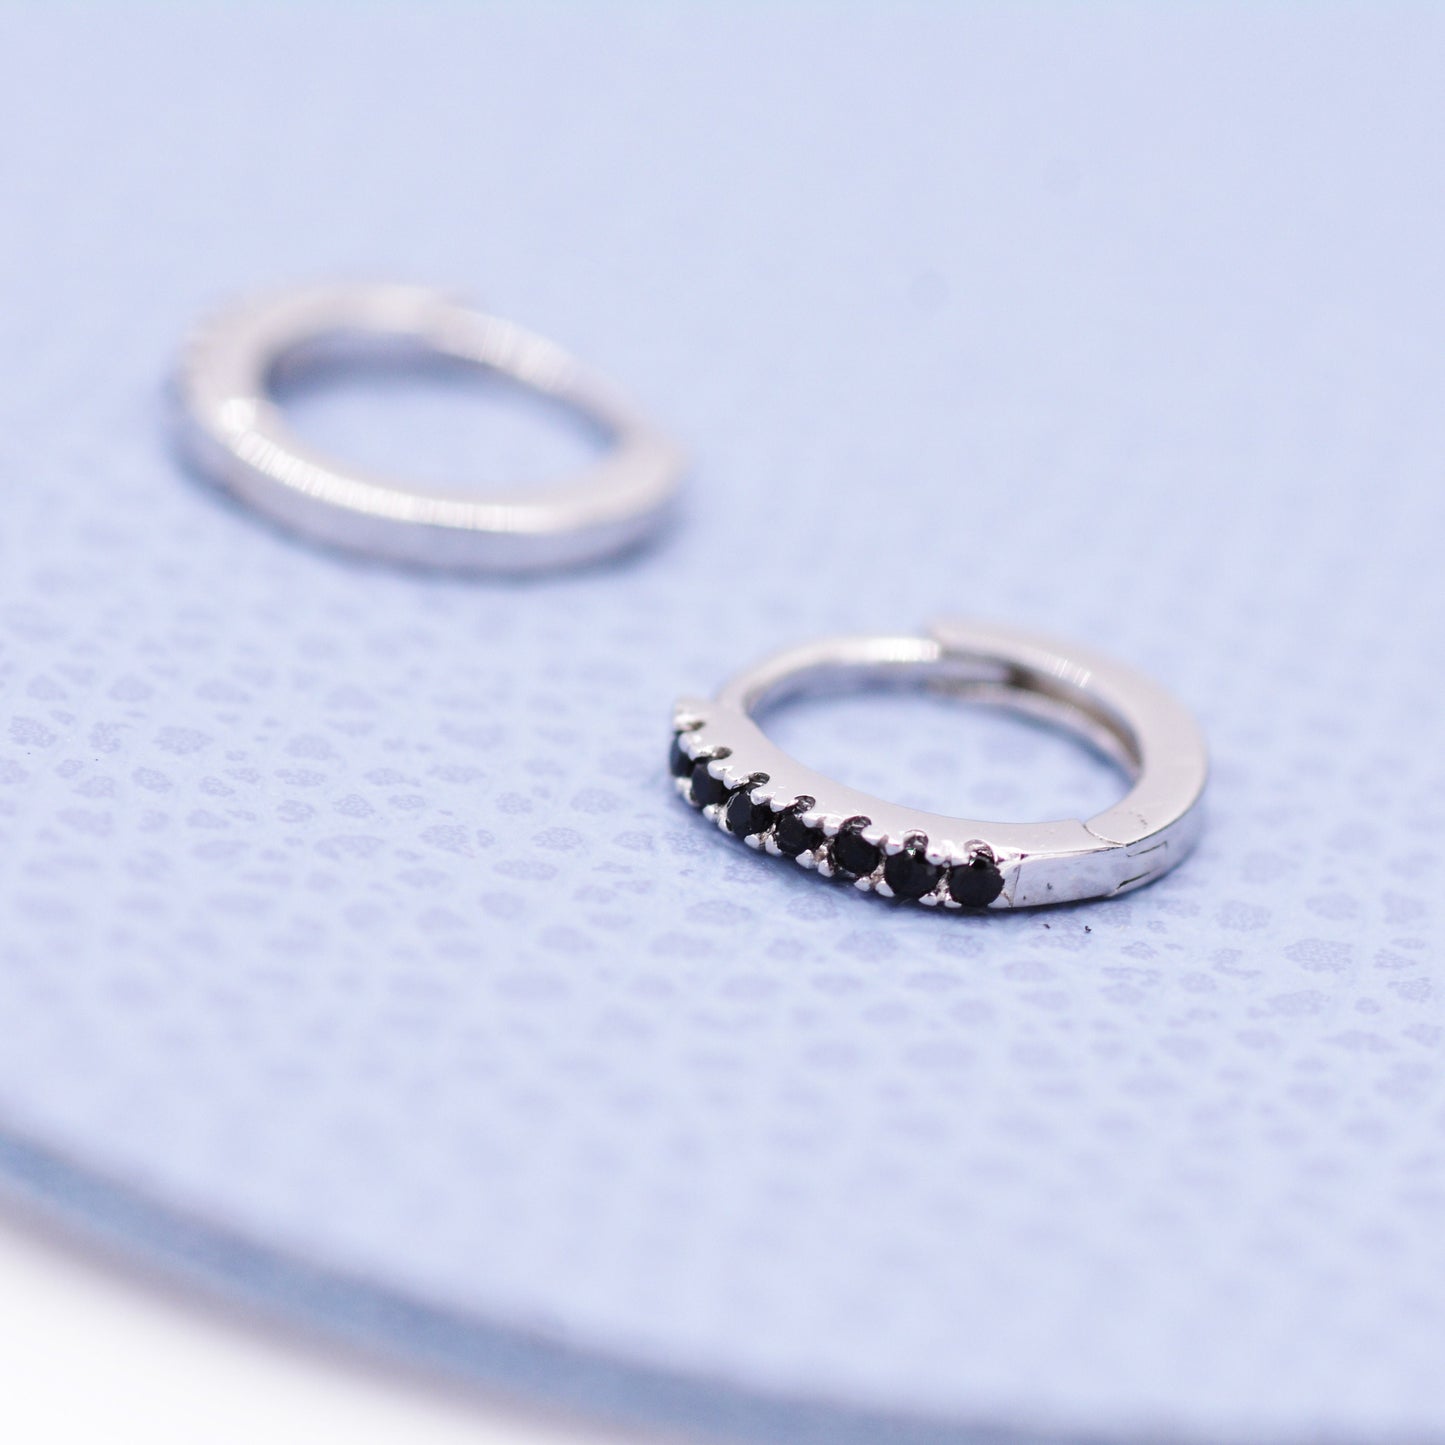 Skinny Huggie Hoop Earrings in Sterling Silver with Black CZ Crystals, Tiny Snug Hoop Earrings, Black Diamond, Simple Hoop Earrings